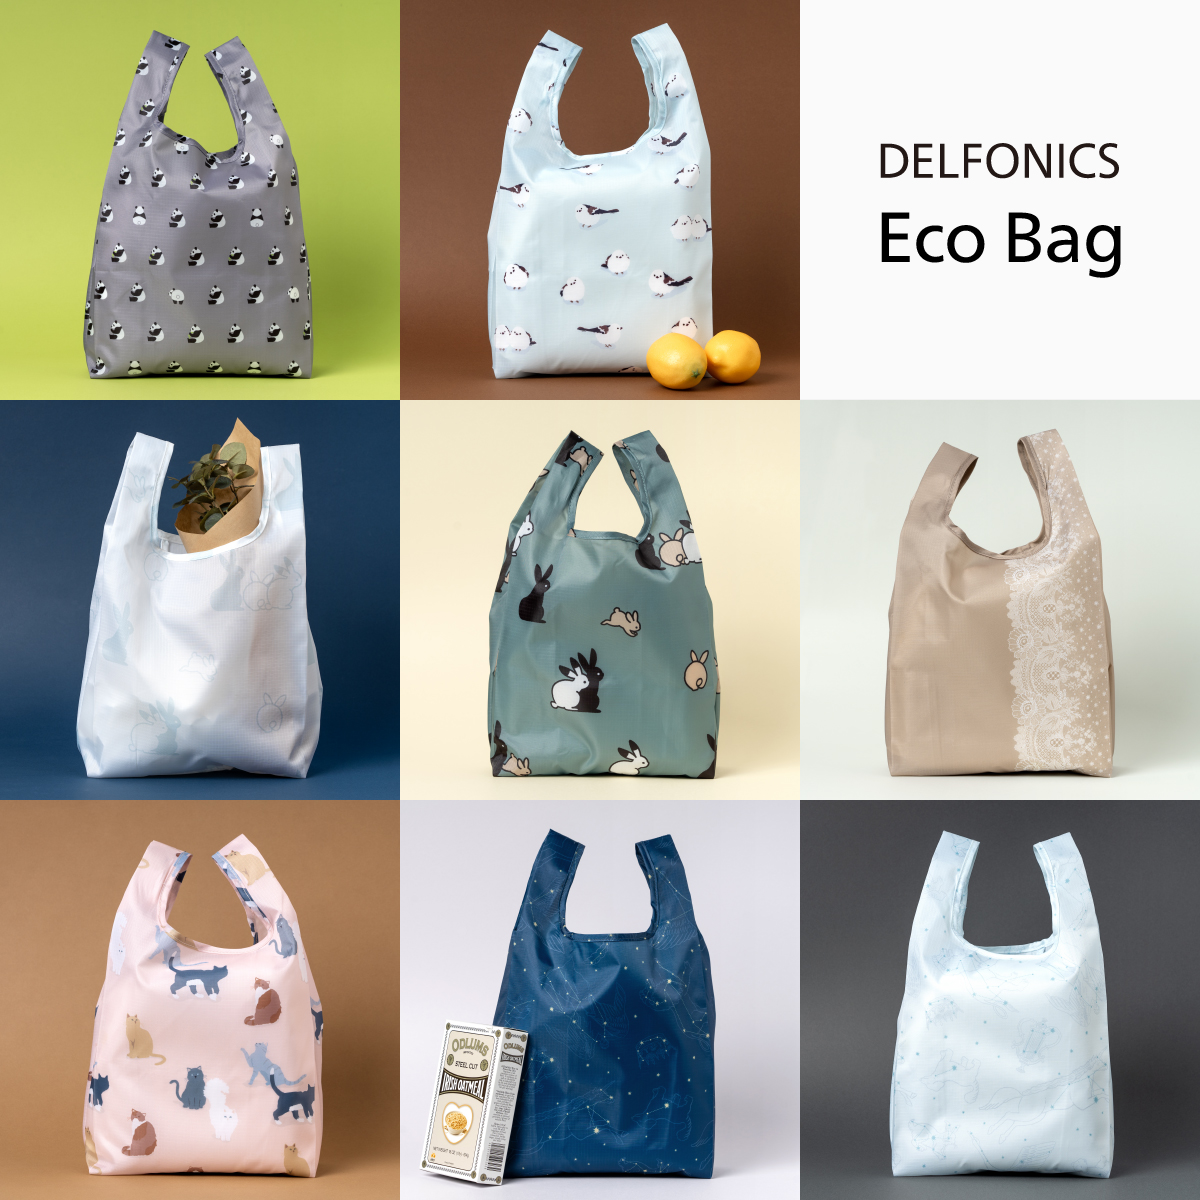 Delfonics Eco Bag